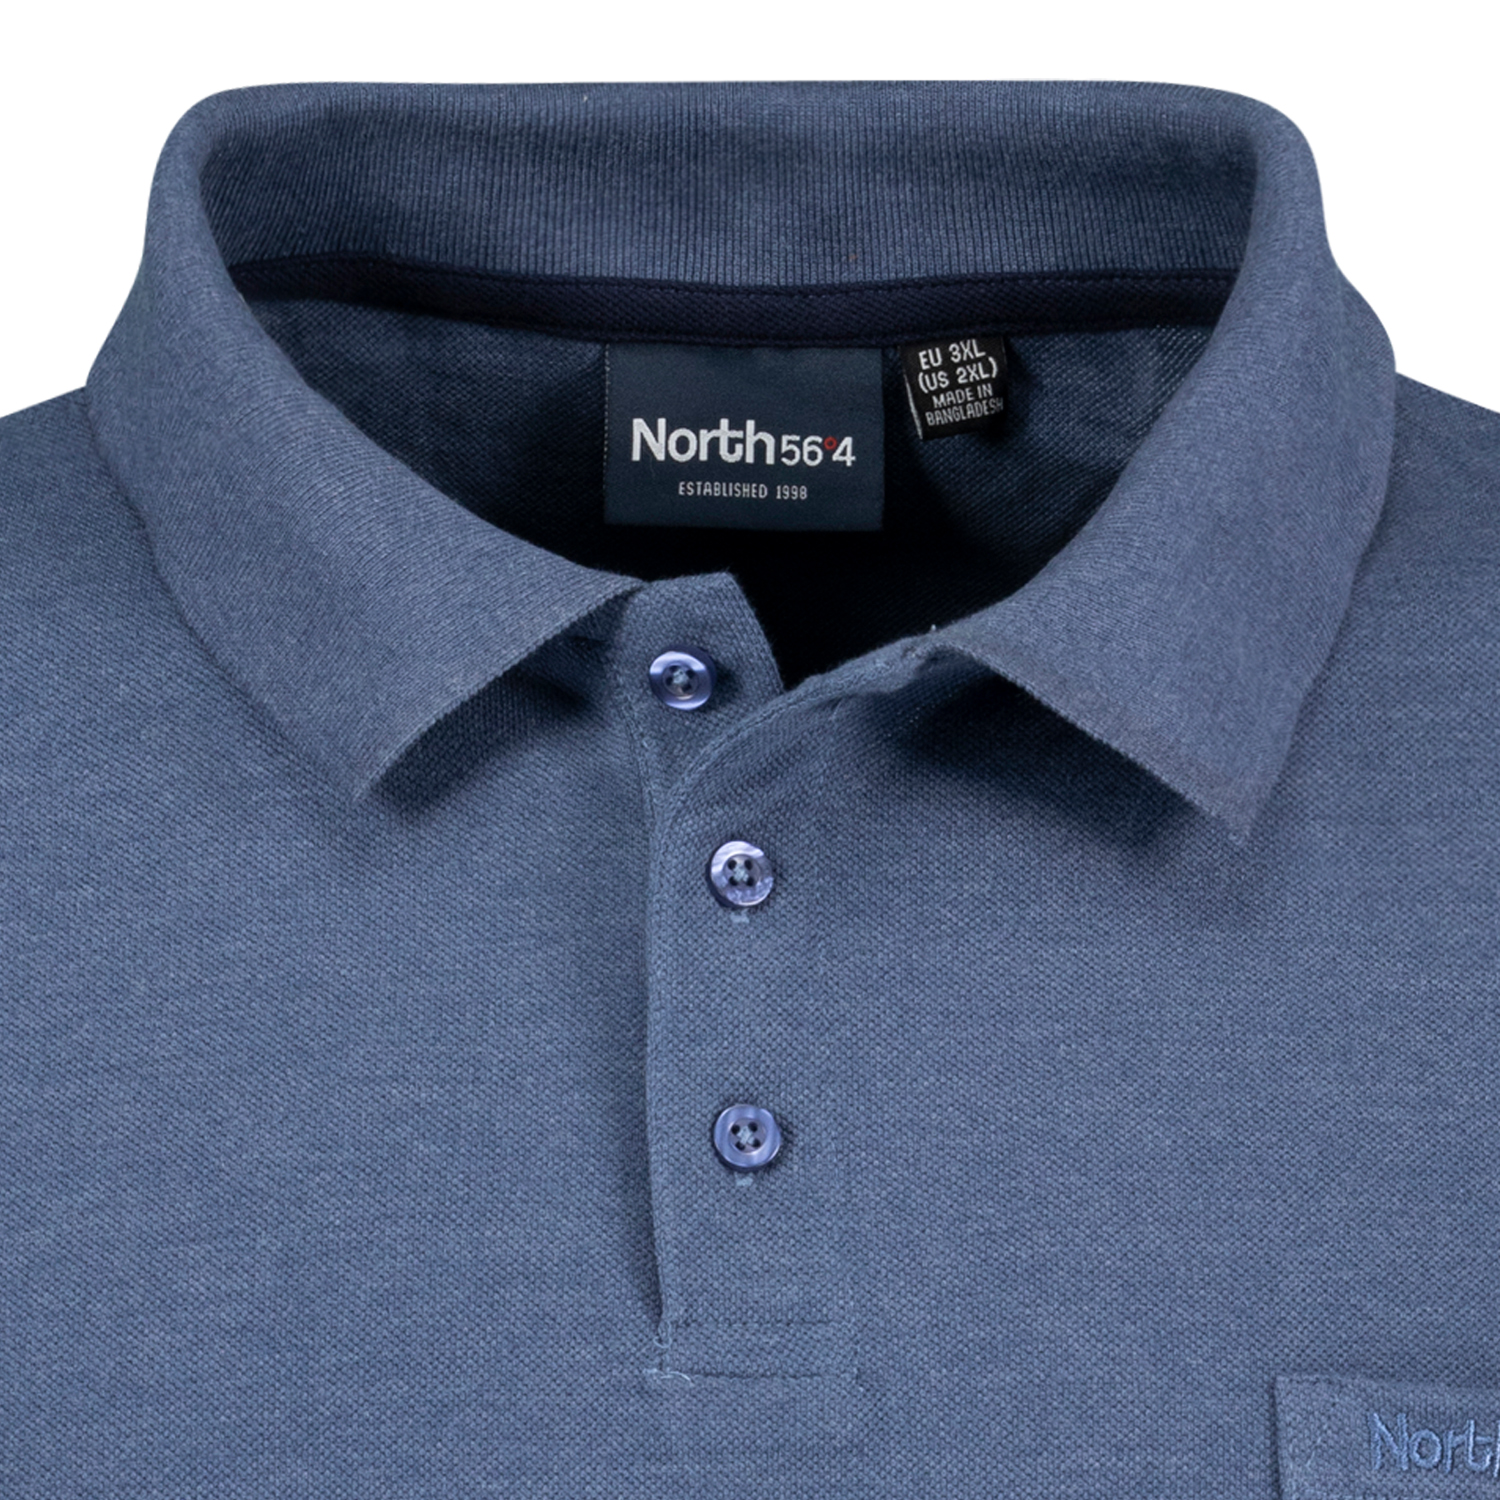 Blaues Poloshirt Pique für Herren in großen Größen 3XL - 8XL Greyes/North 56°4